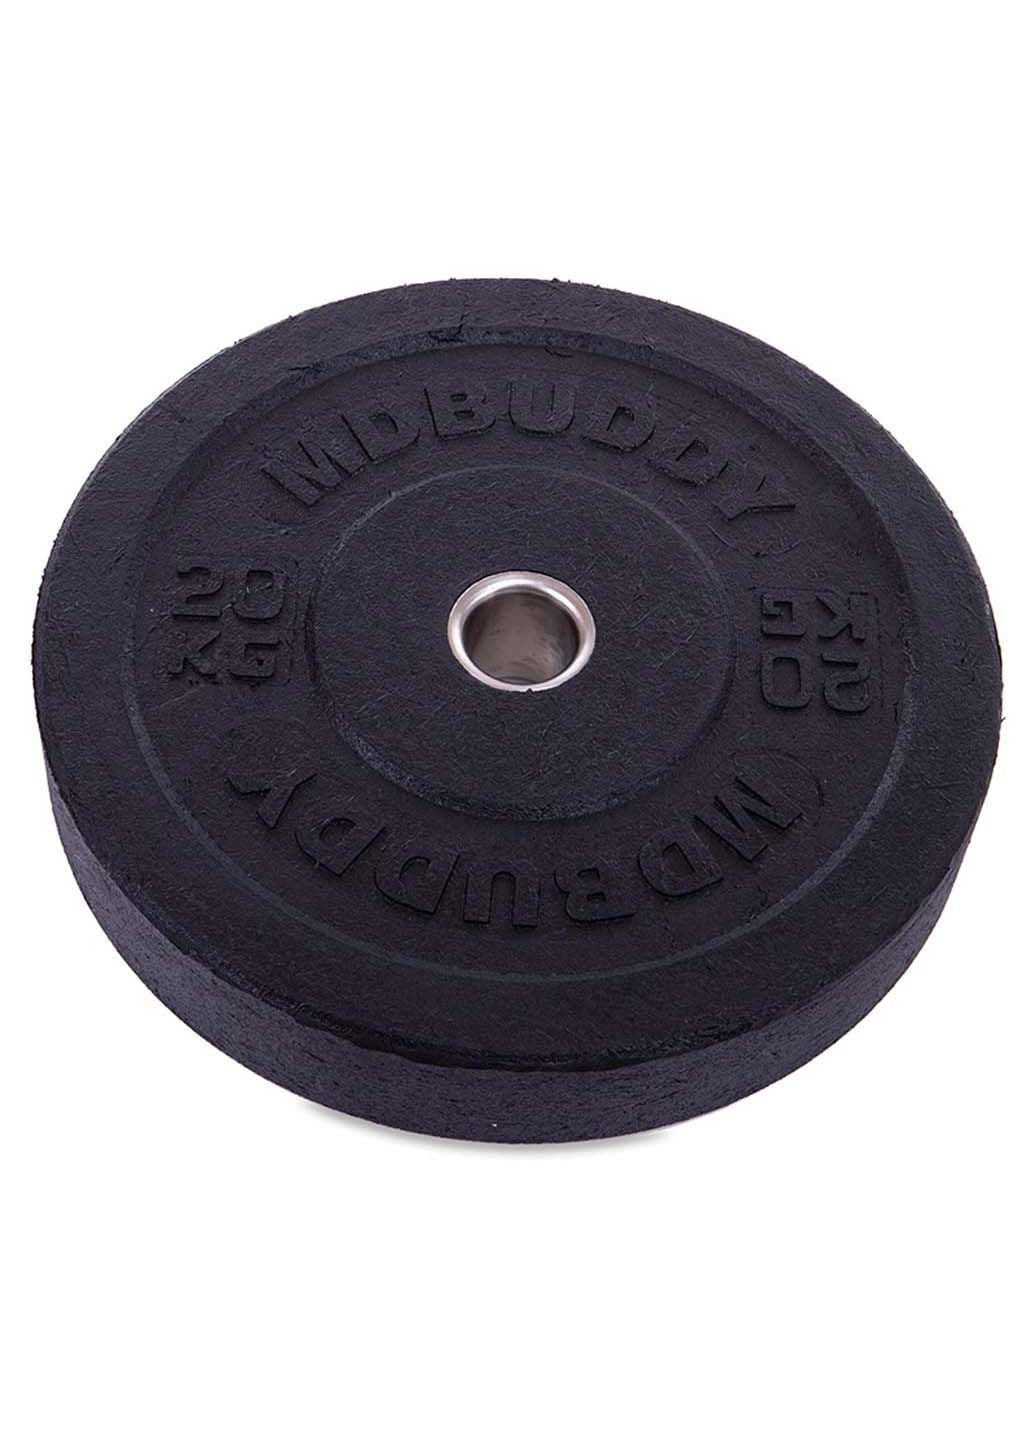 Млинці диски бамперні для кросфіту Bumper Plates TA-2676 20 кг MDbuddy (286043746)